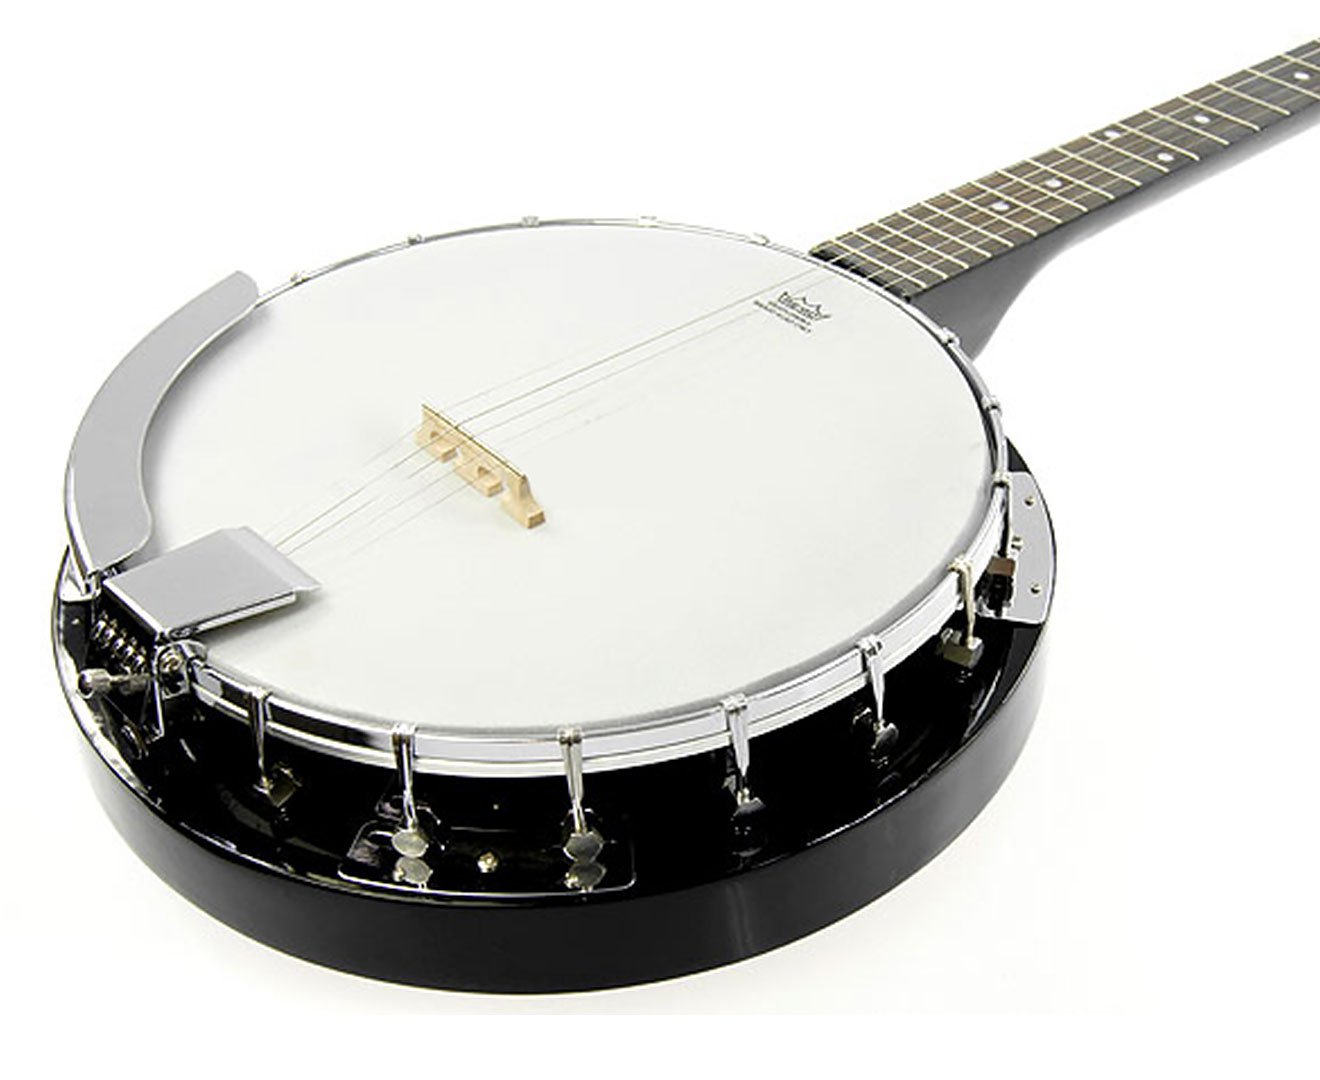 Karrera 5 String Resonator Banjo - Black 1